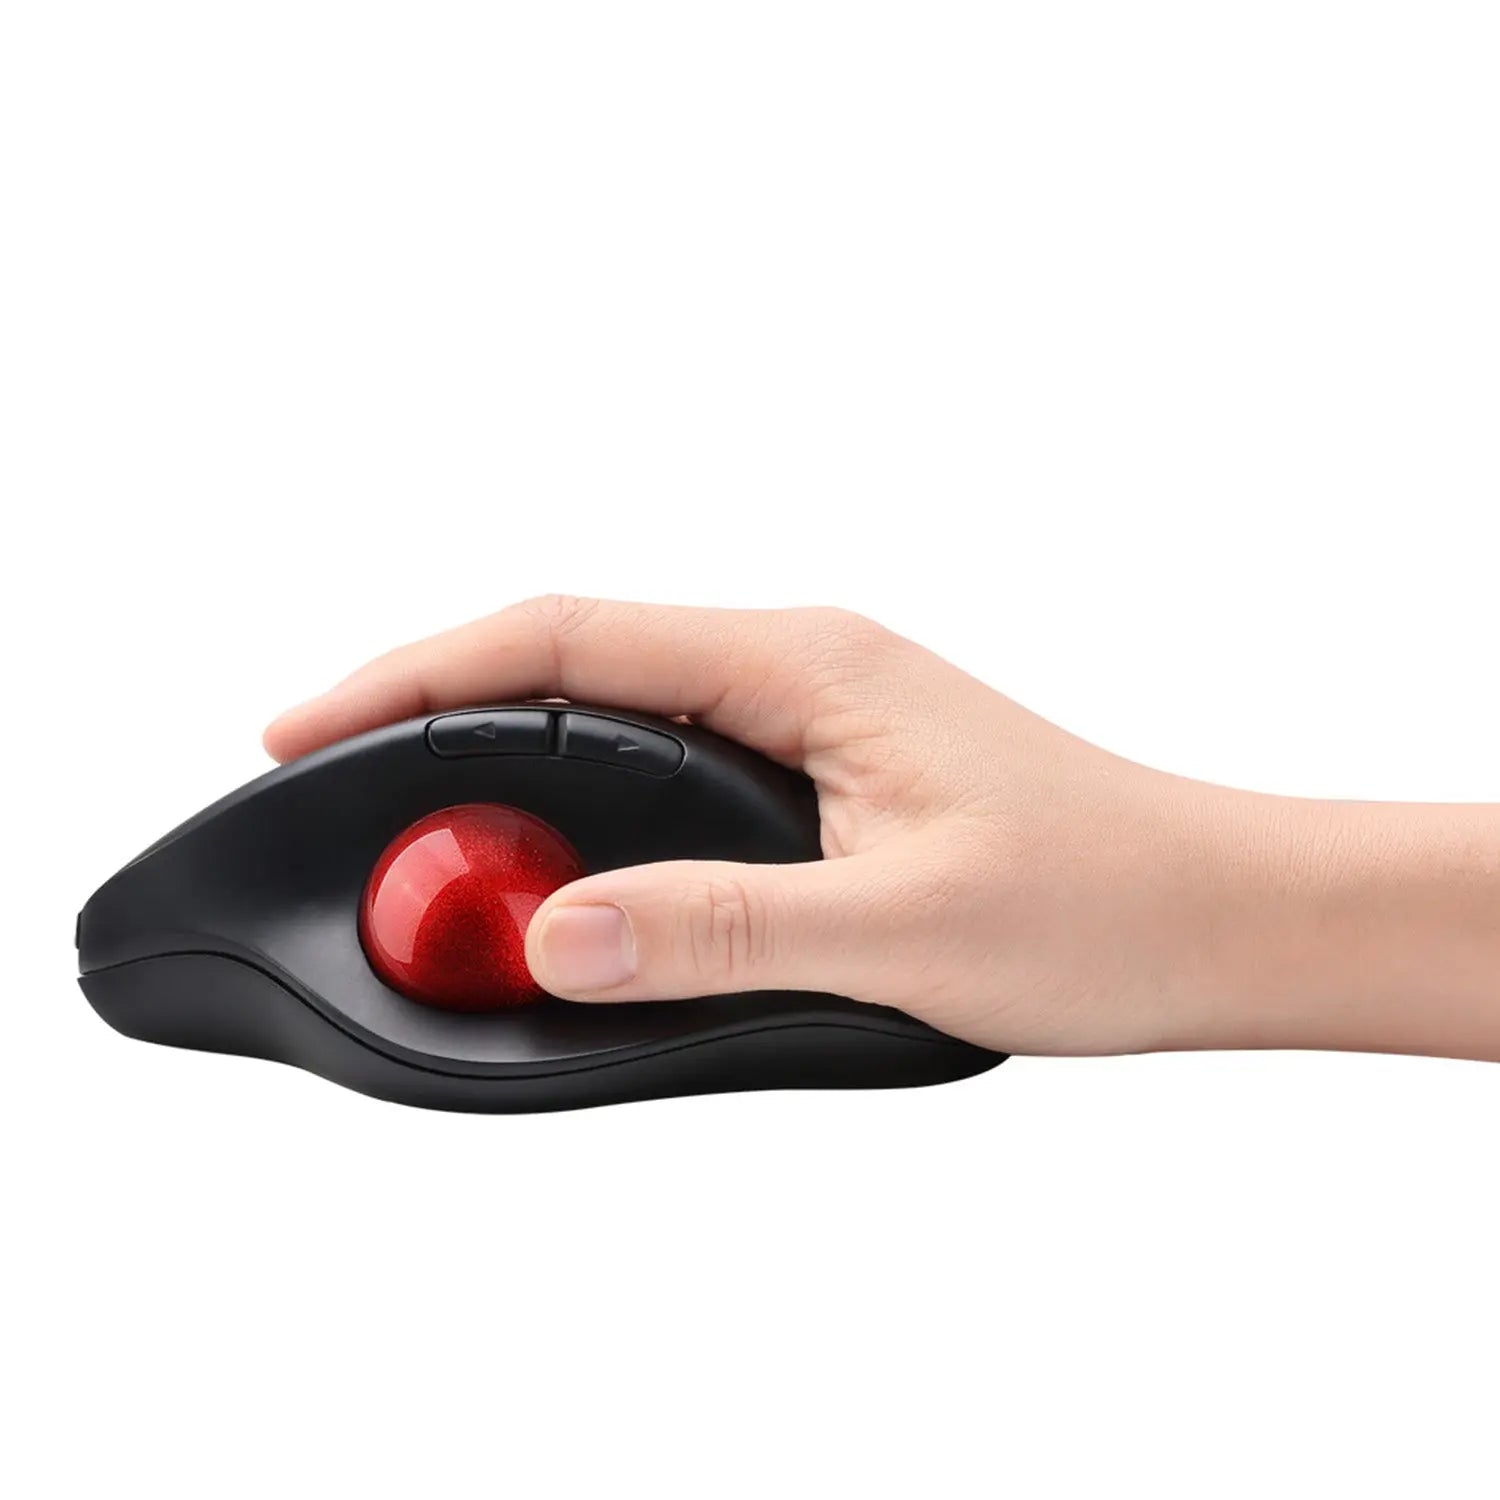 JTD Souris Trackball sans fil: contrôle facile du pouce, souris ergonomique  précise surveillance lisse avec 4 niveaux DPI réglable, connexion USB